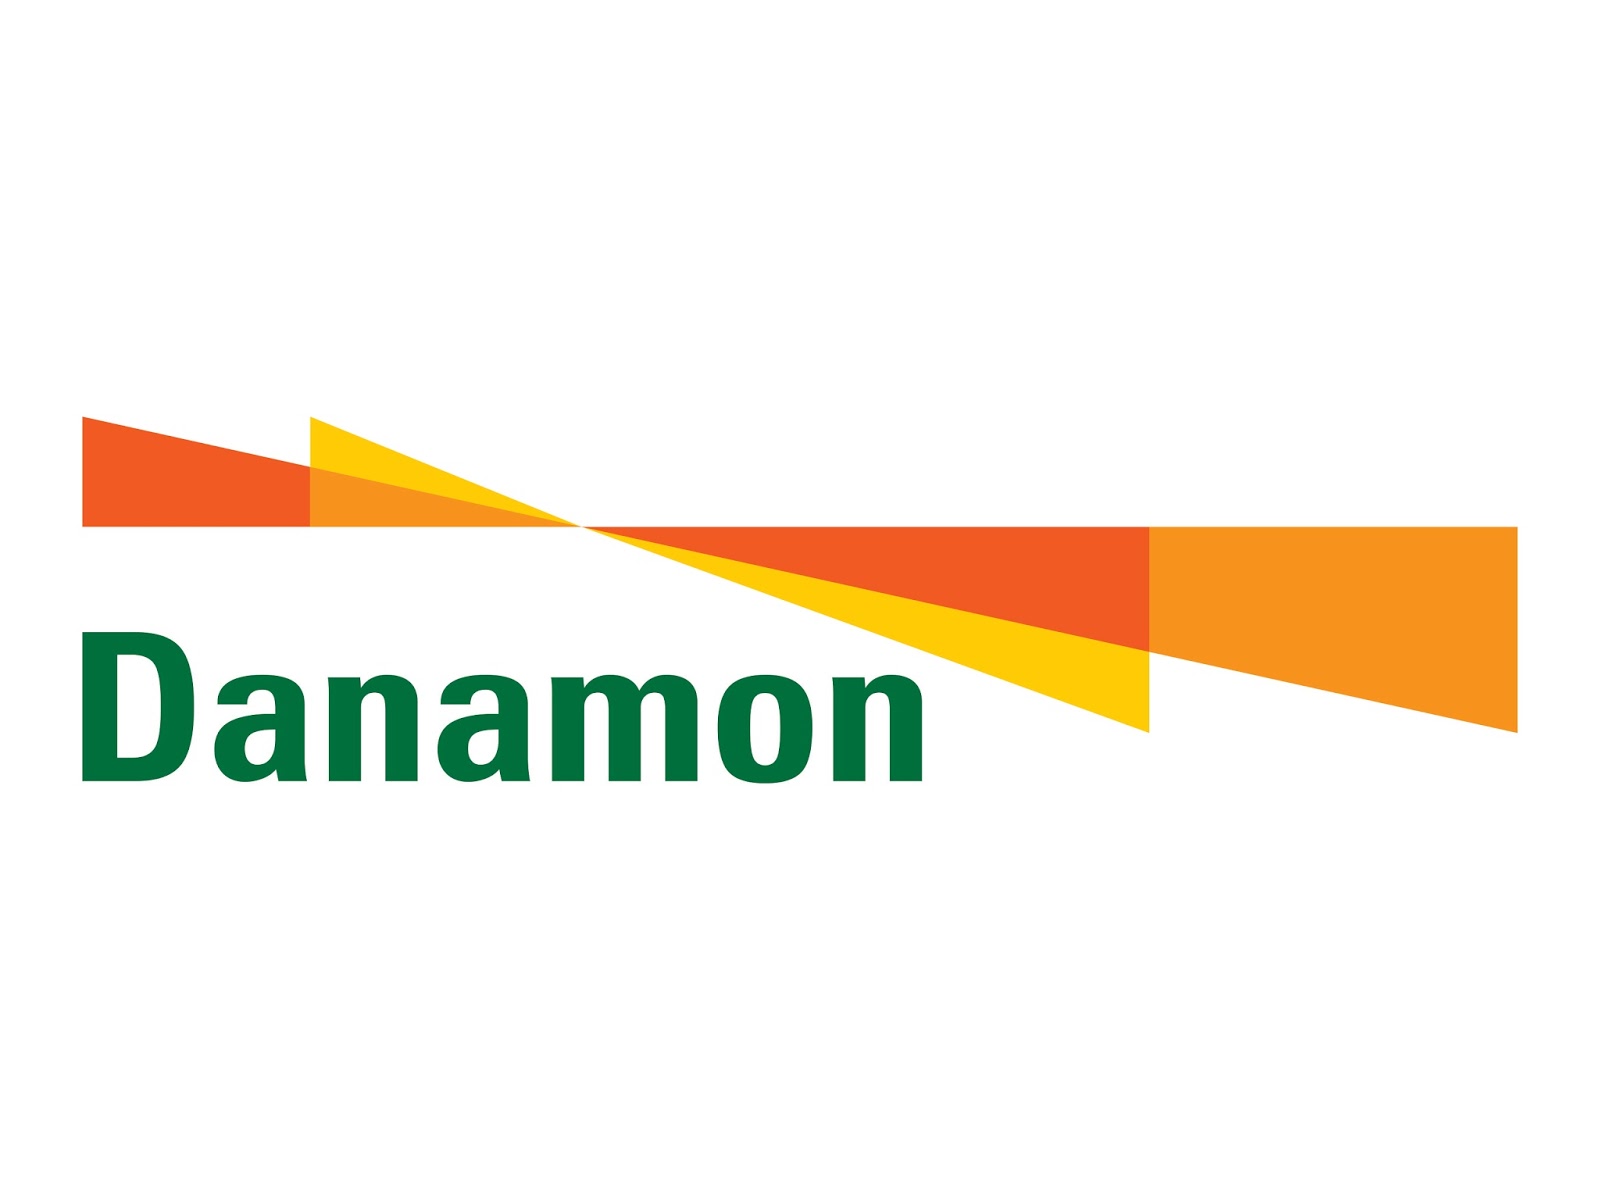 Logo Bank Danamon Format Cdr Png Gudril Tempat Bisa Mendownload